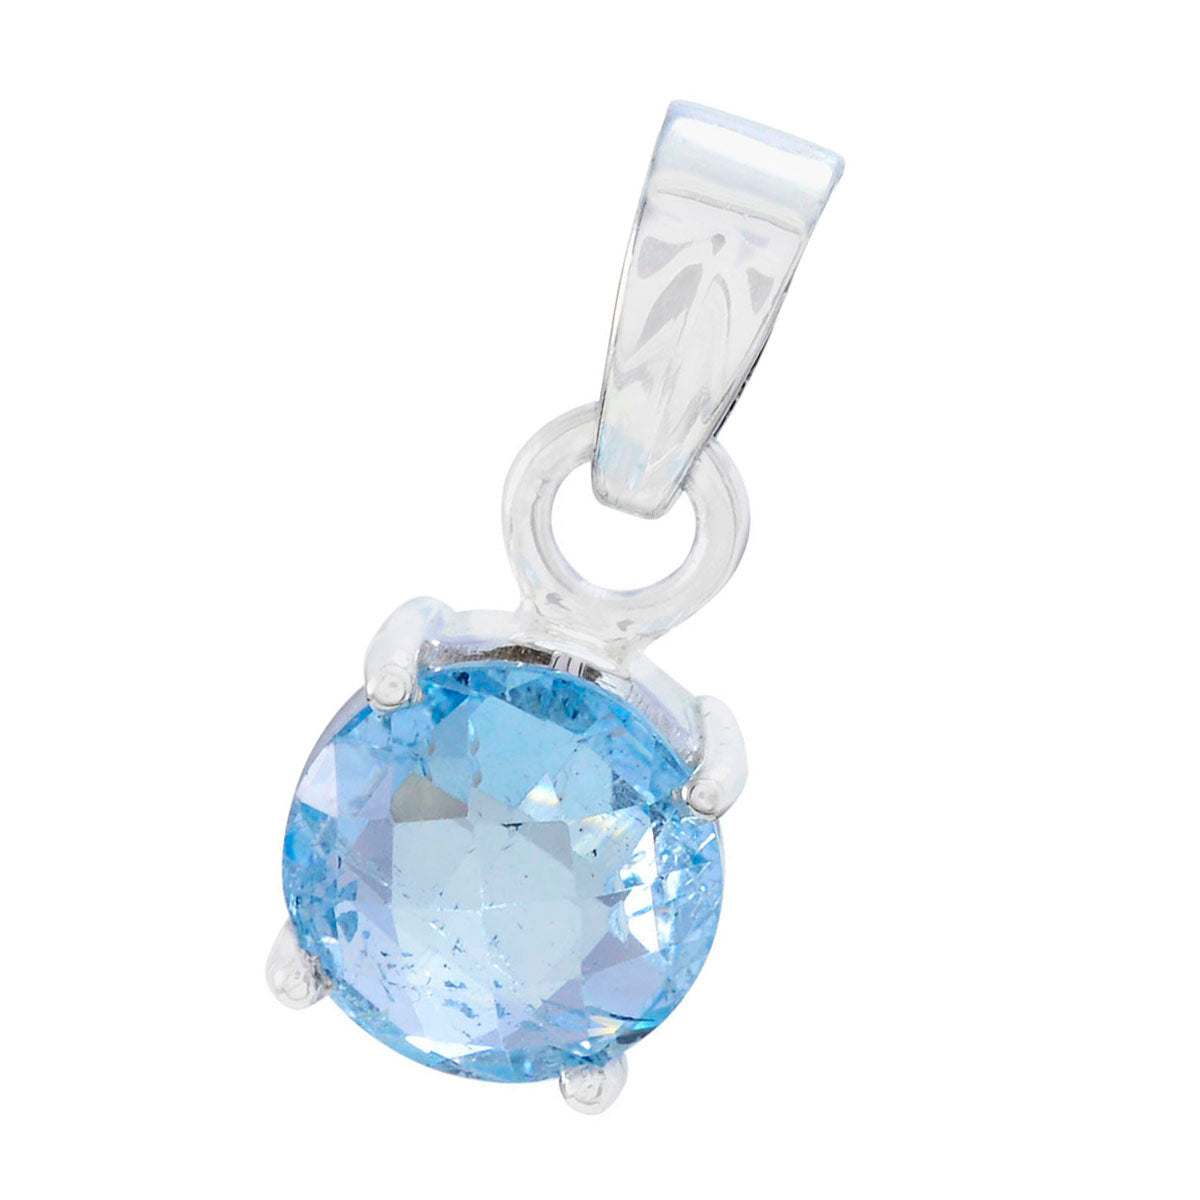 Riyo drop gems redondo facetado azul topacio azul colgante de plata maciza regalo para aniversario